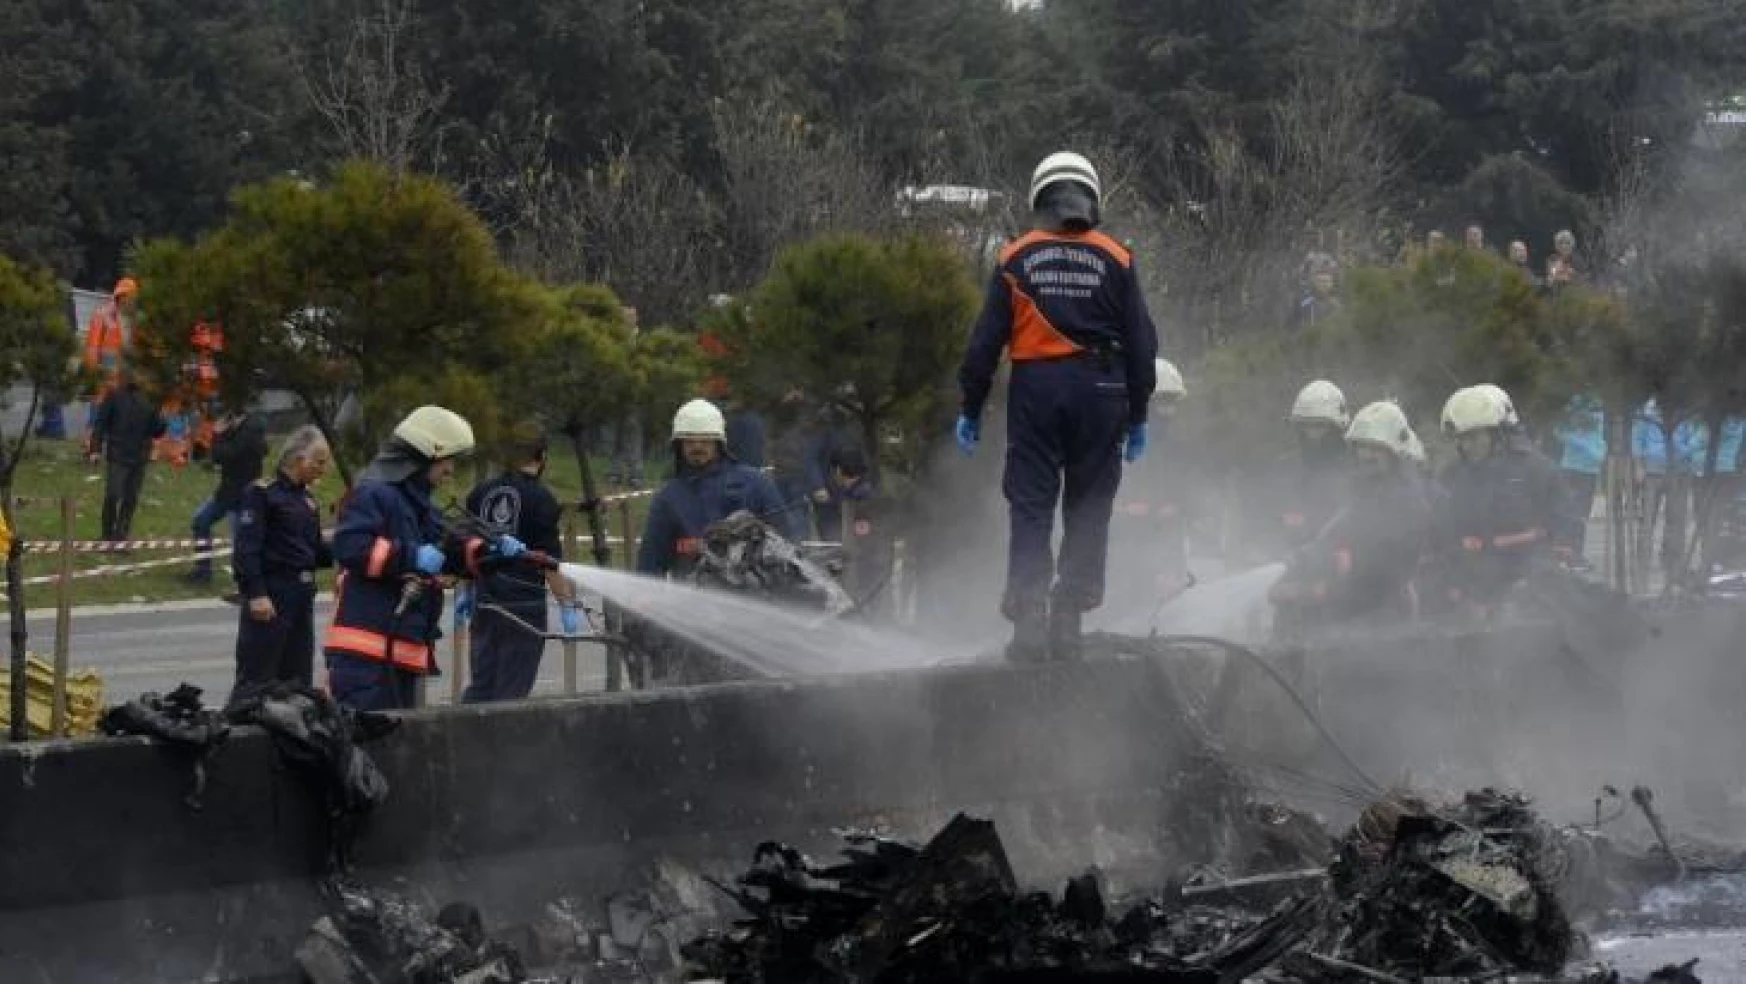 Büyükçekmece'de 7 kişinin hayatını kaybettiği helikopter kazasına ilişkin iddianame hazırlandı